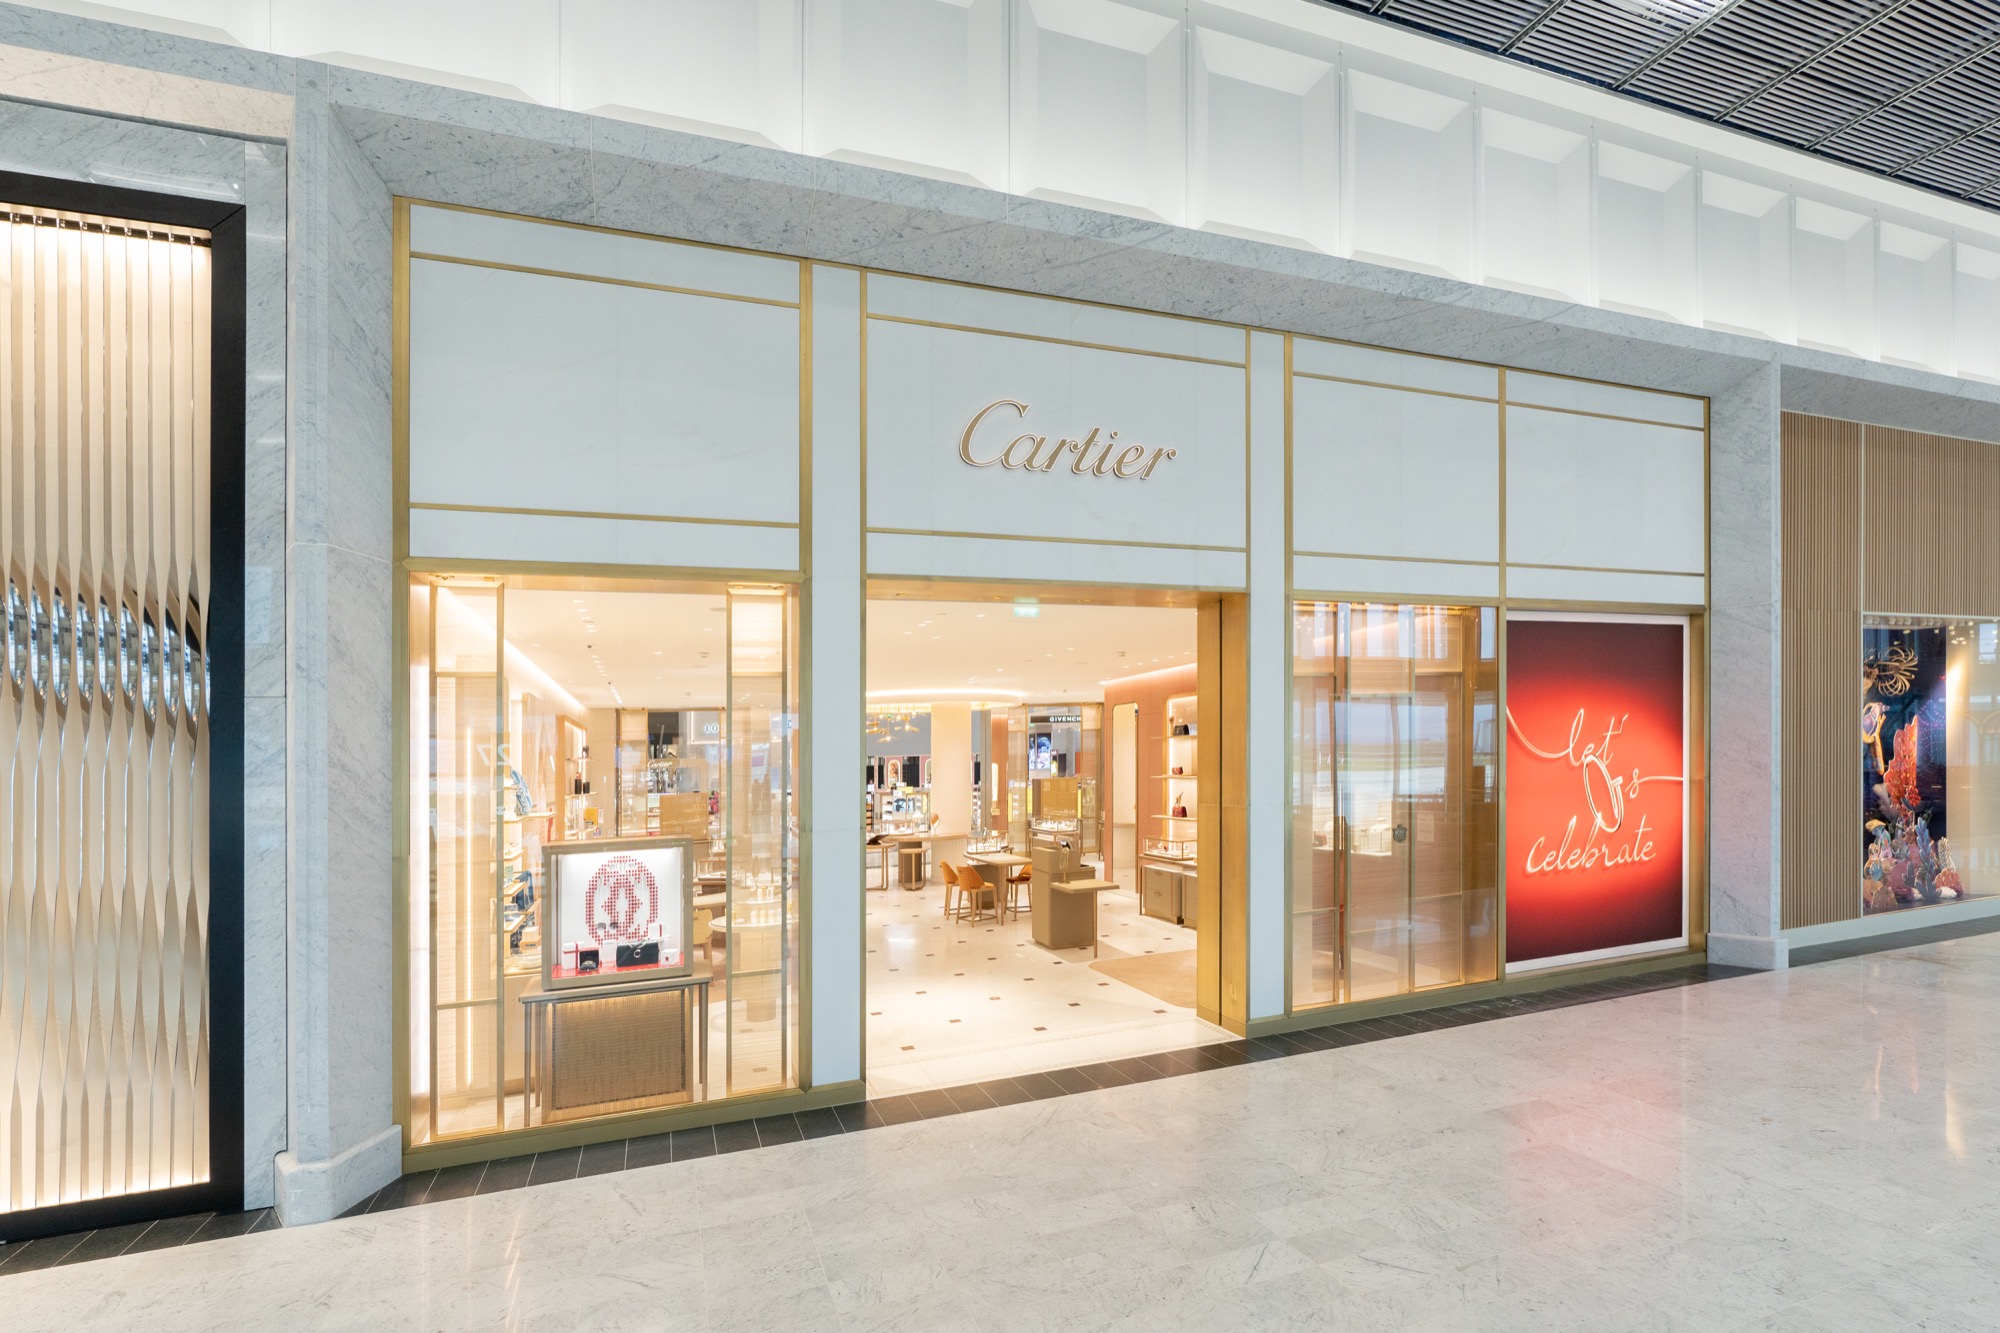 Maison Cartier showcases latest boutique at new-look Paris CDG T1